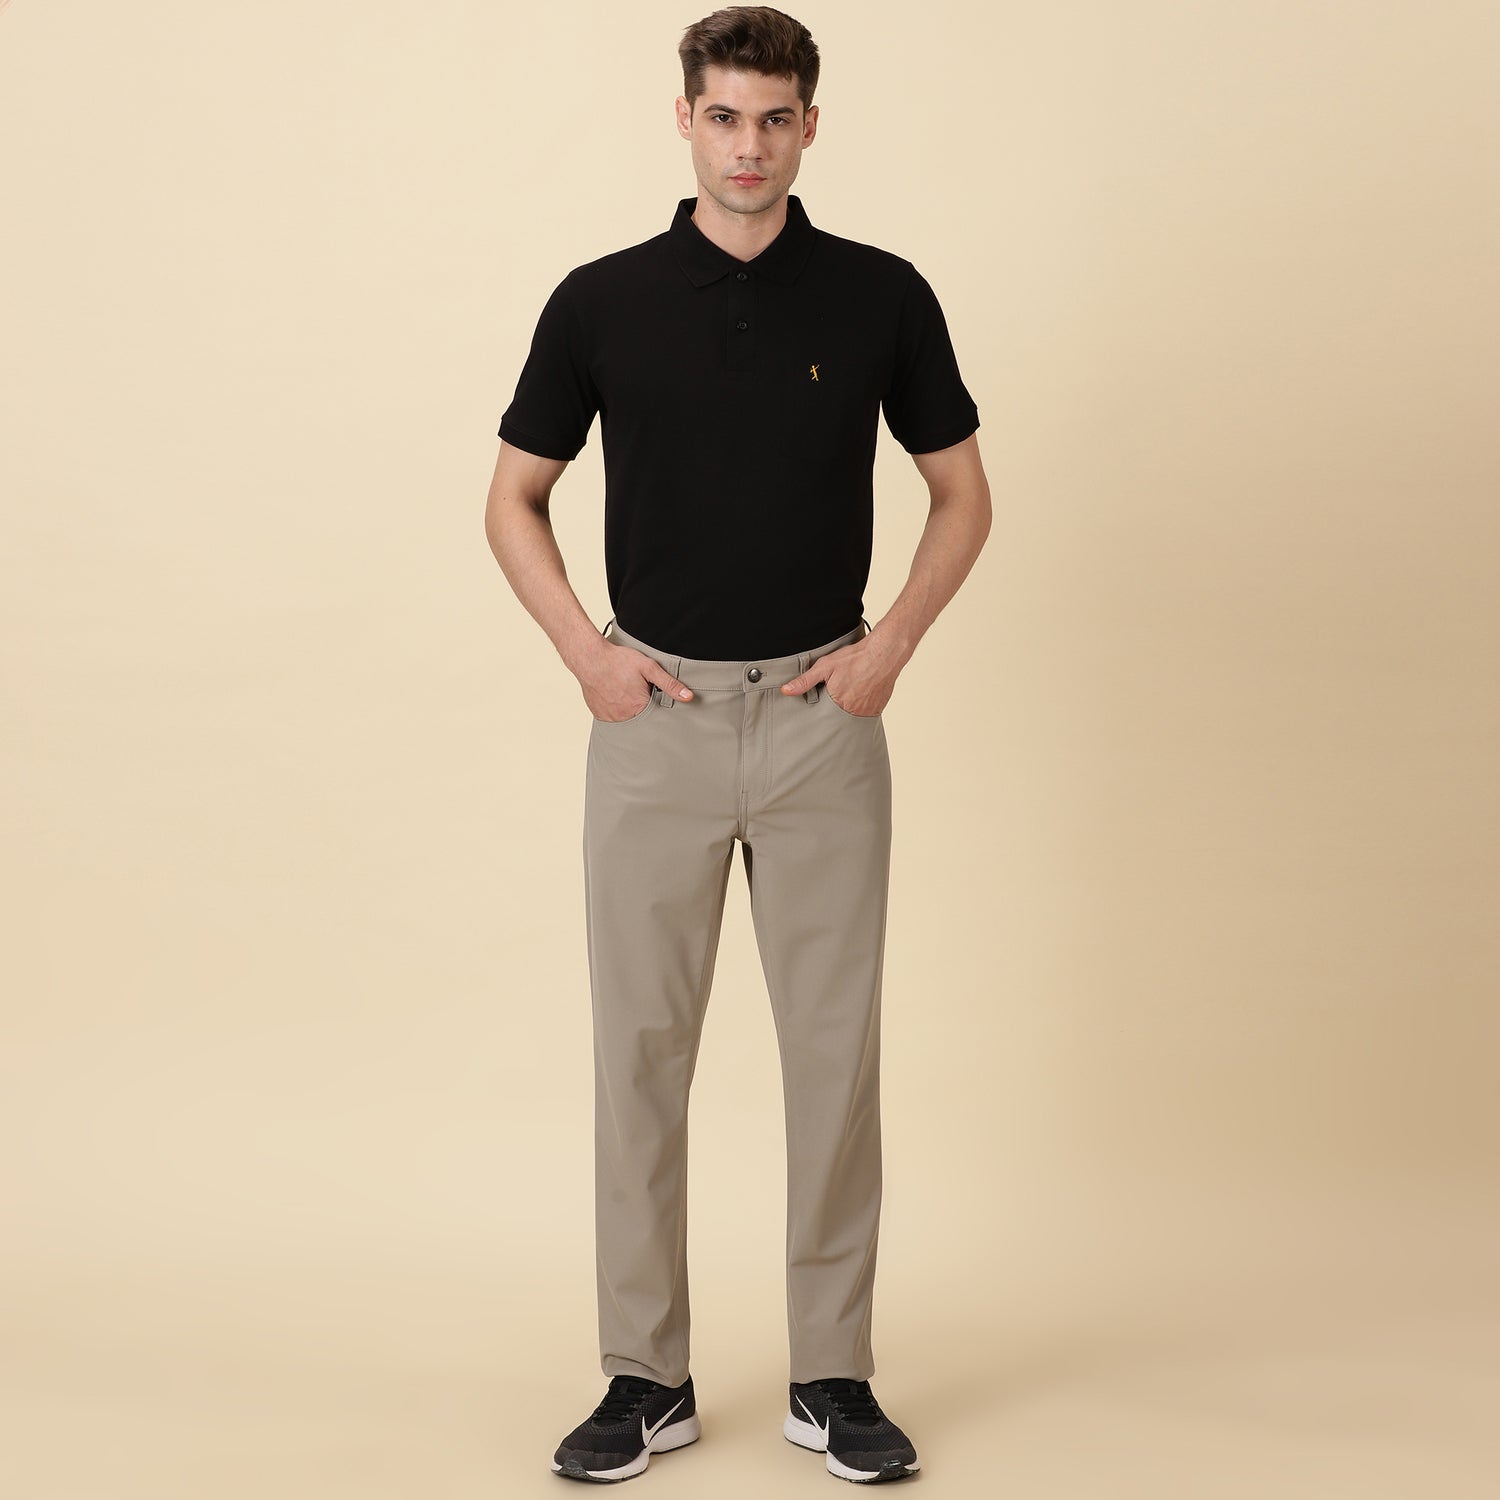 Slim Fit Golf Pant - Light Khaki